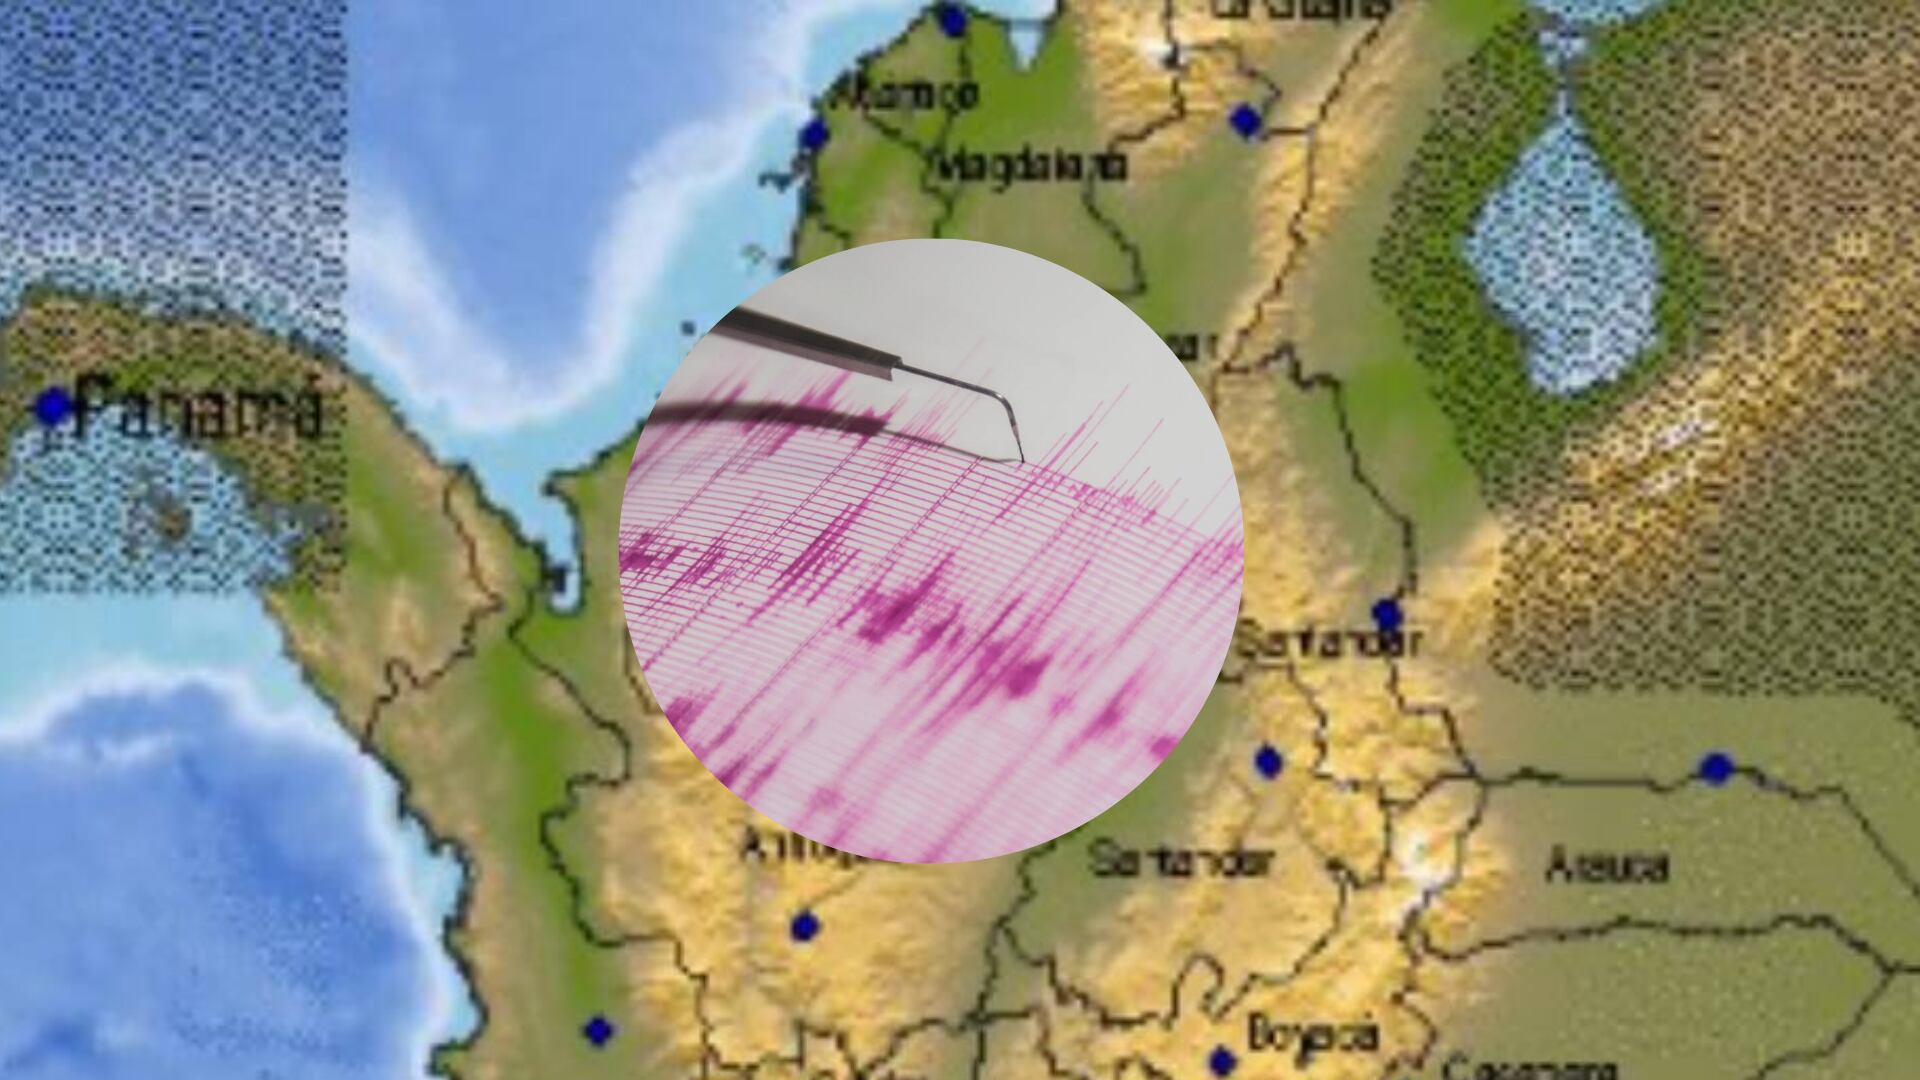 temblor sacudió el centro de colombia este sábado 4 de mayo: magnitud, epicentro y más